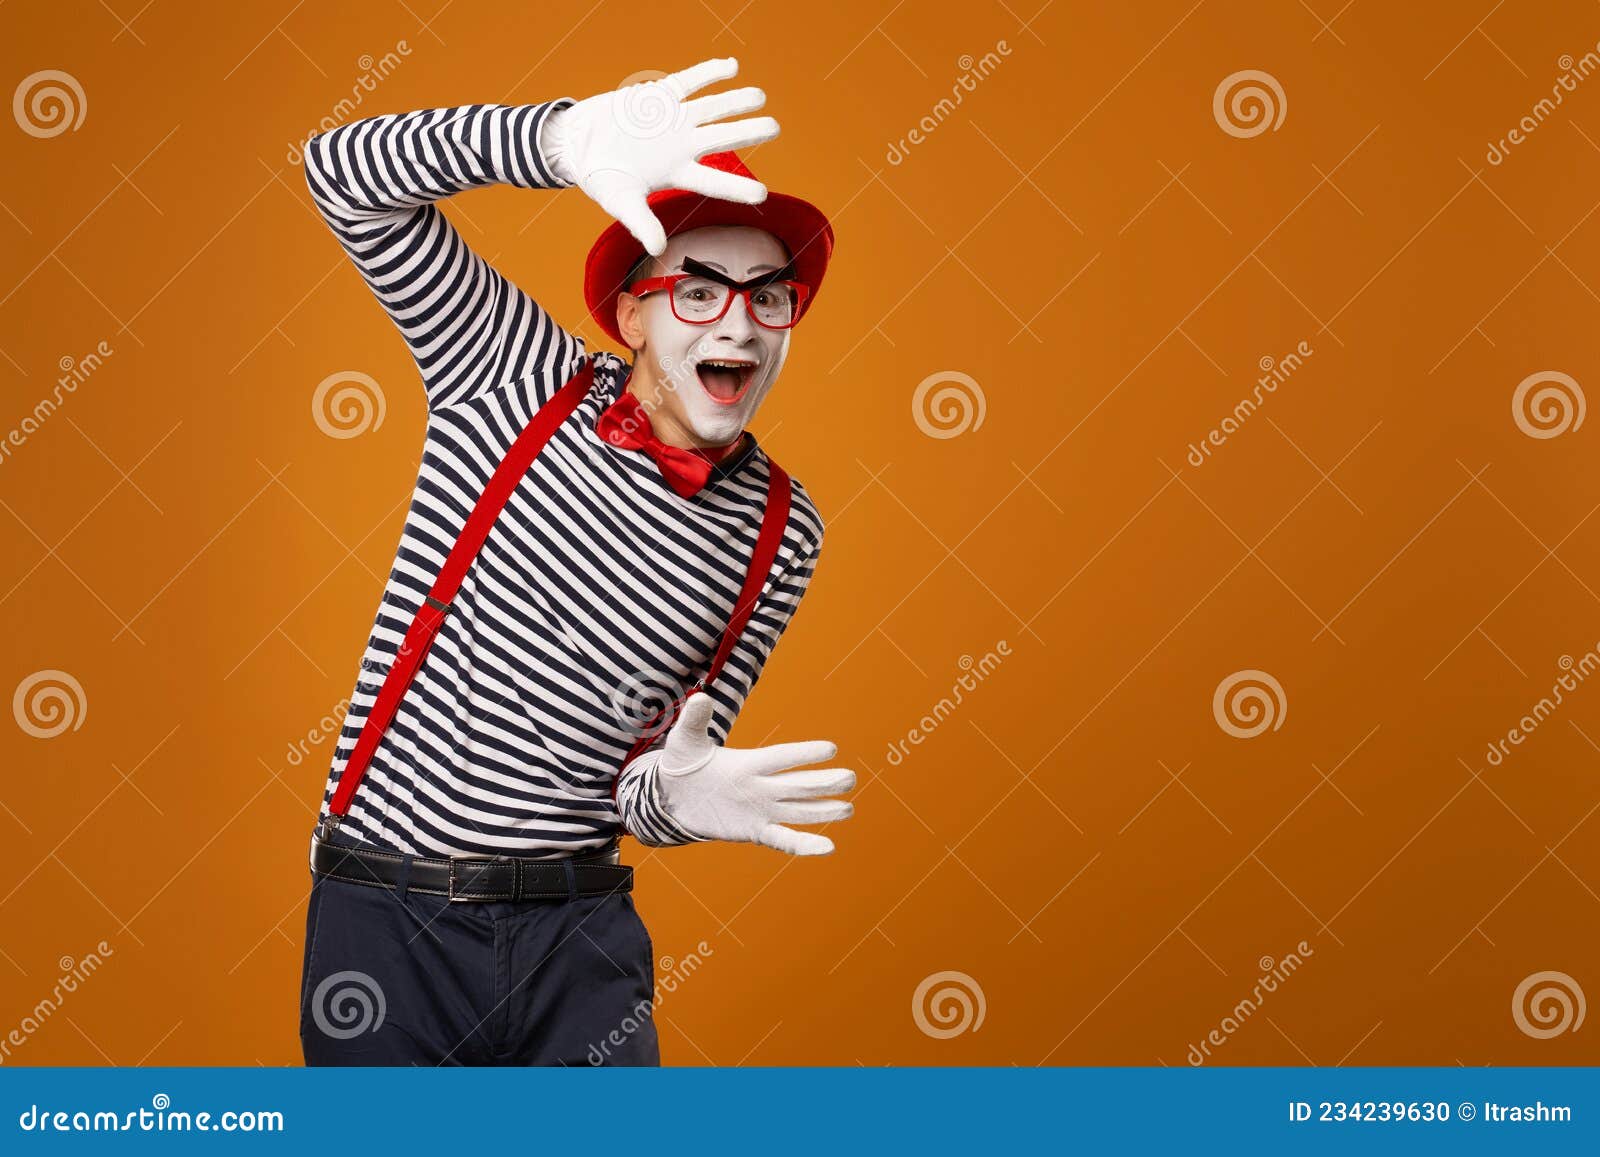 Hombre De Mimo Sonriente Con Sombrero Rojo Guantes Blancos Y Camiseta Rayada Con Fondo Naranja En Blanco En Estudio. Foto archivo - Imagen de gente, fondo: 234239630